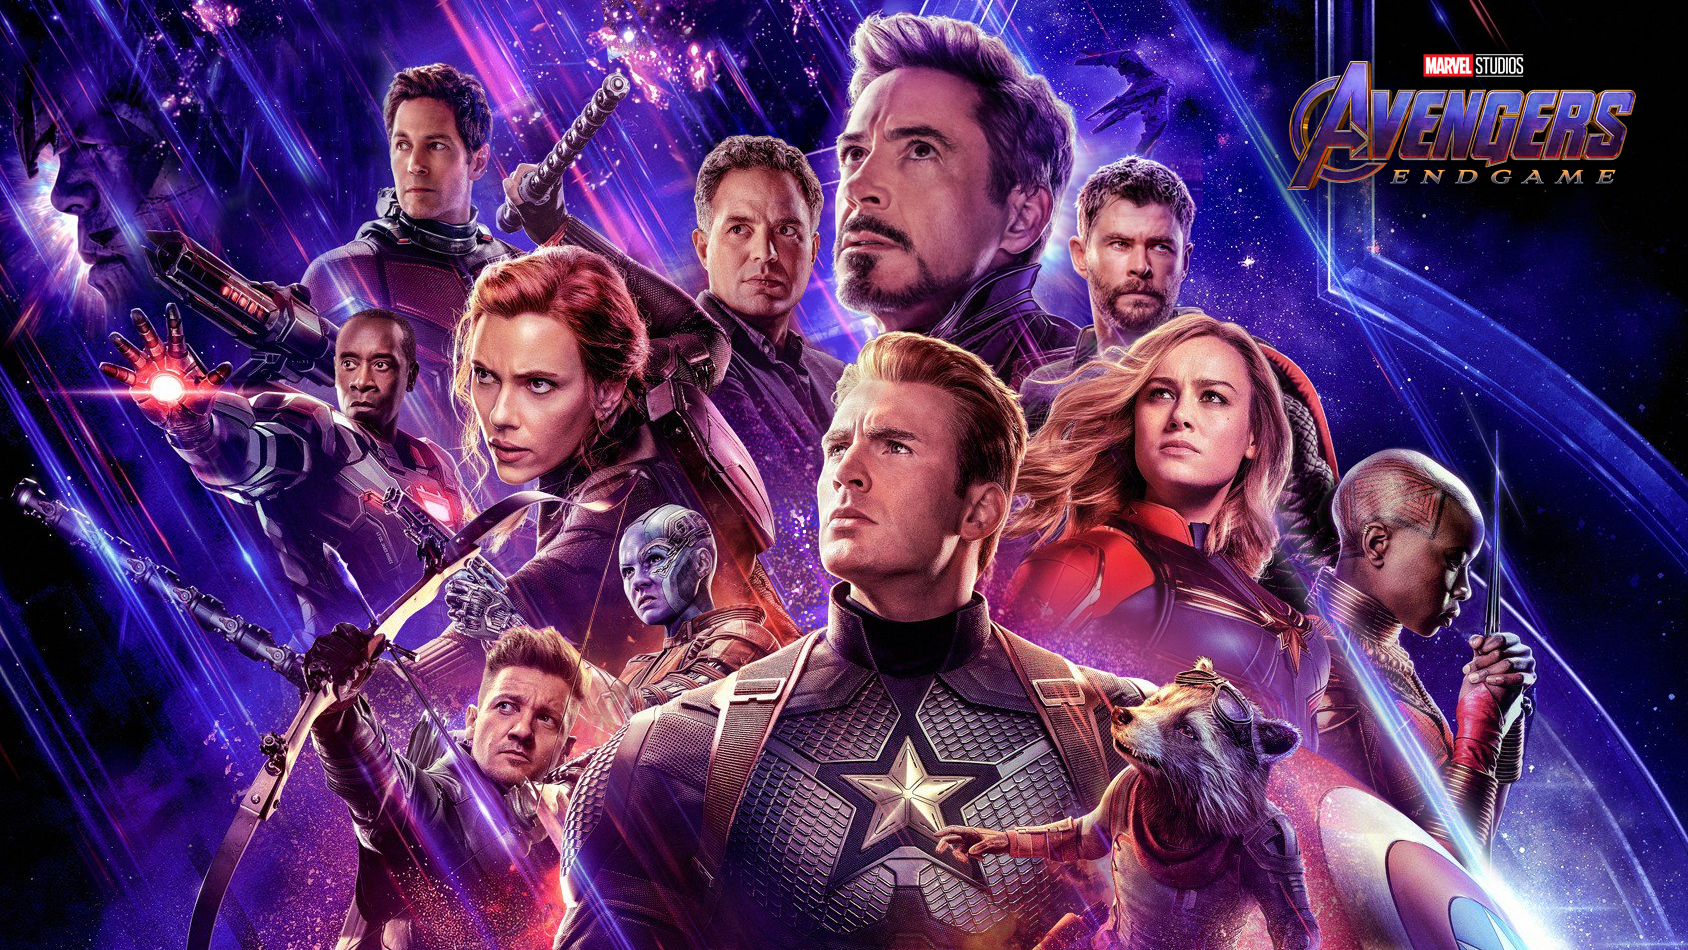 32 Marvel Studios Avengers Endgame Wallpapers On